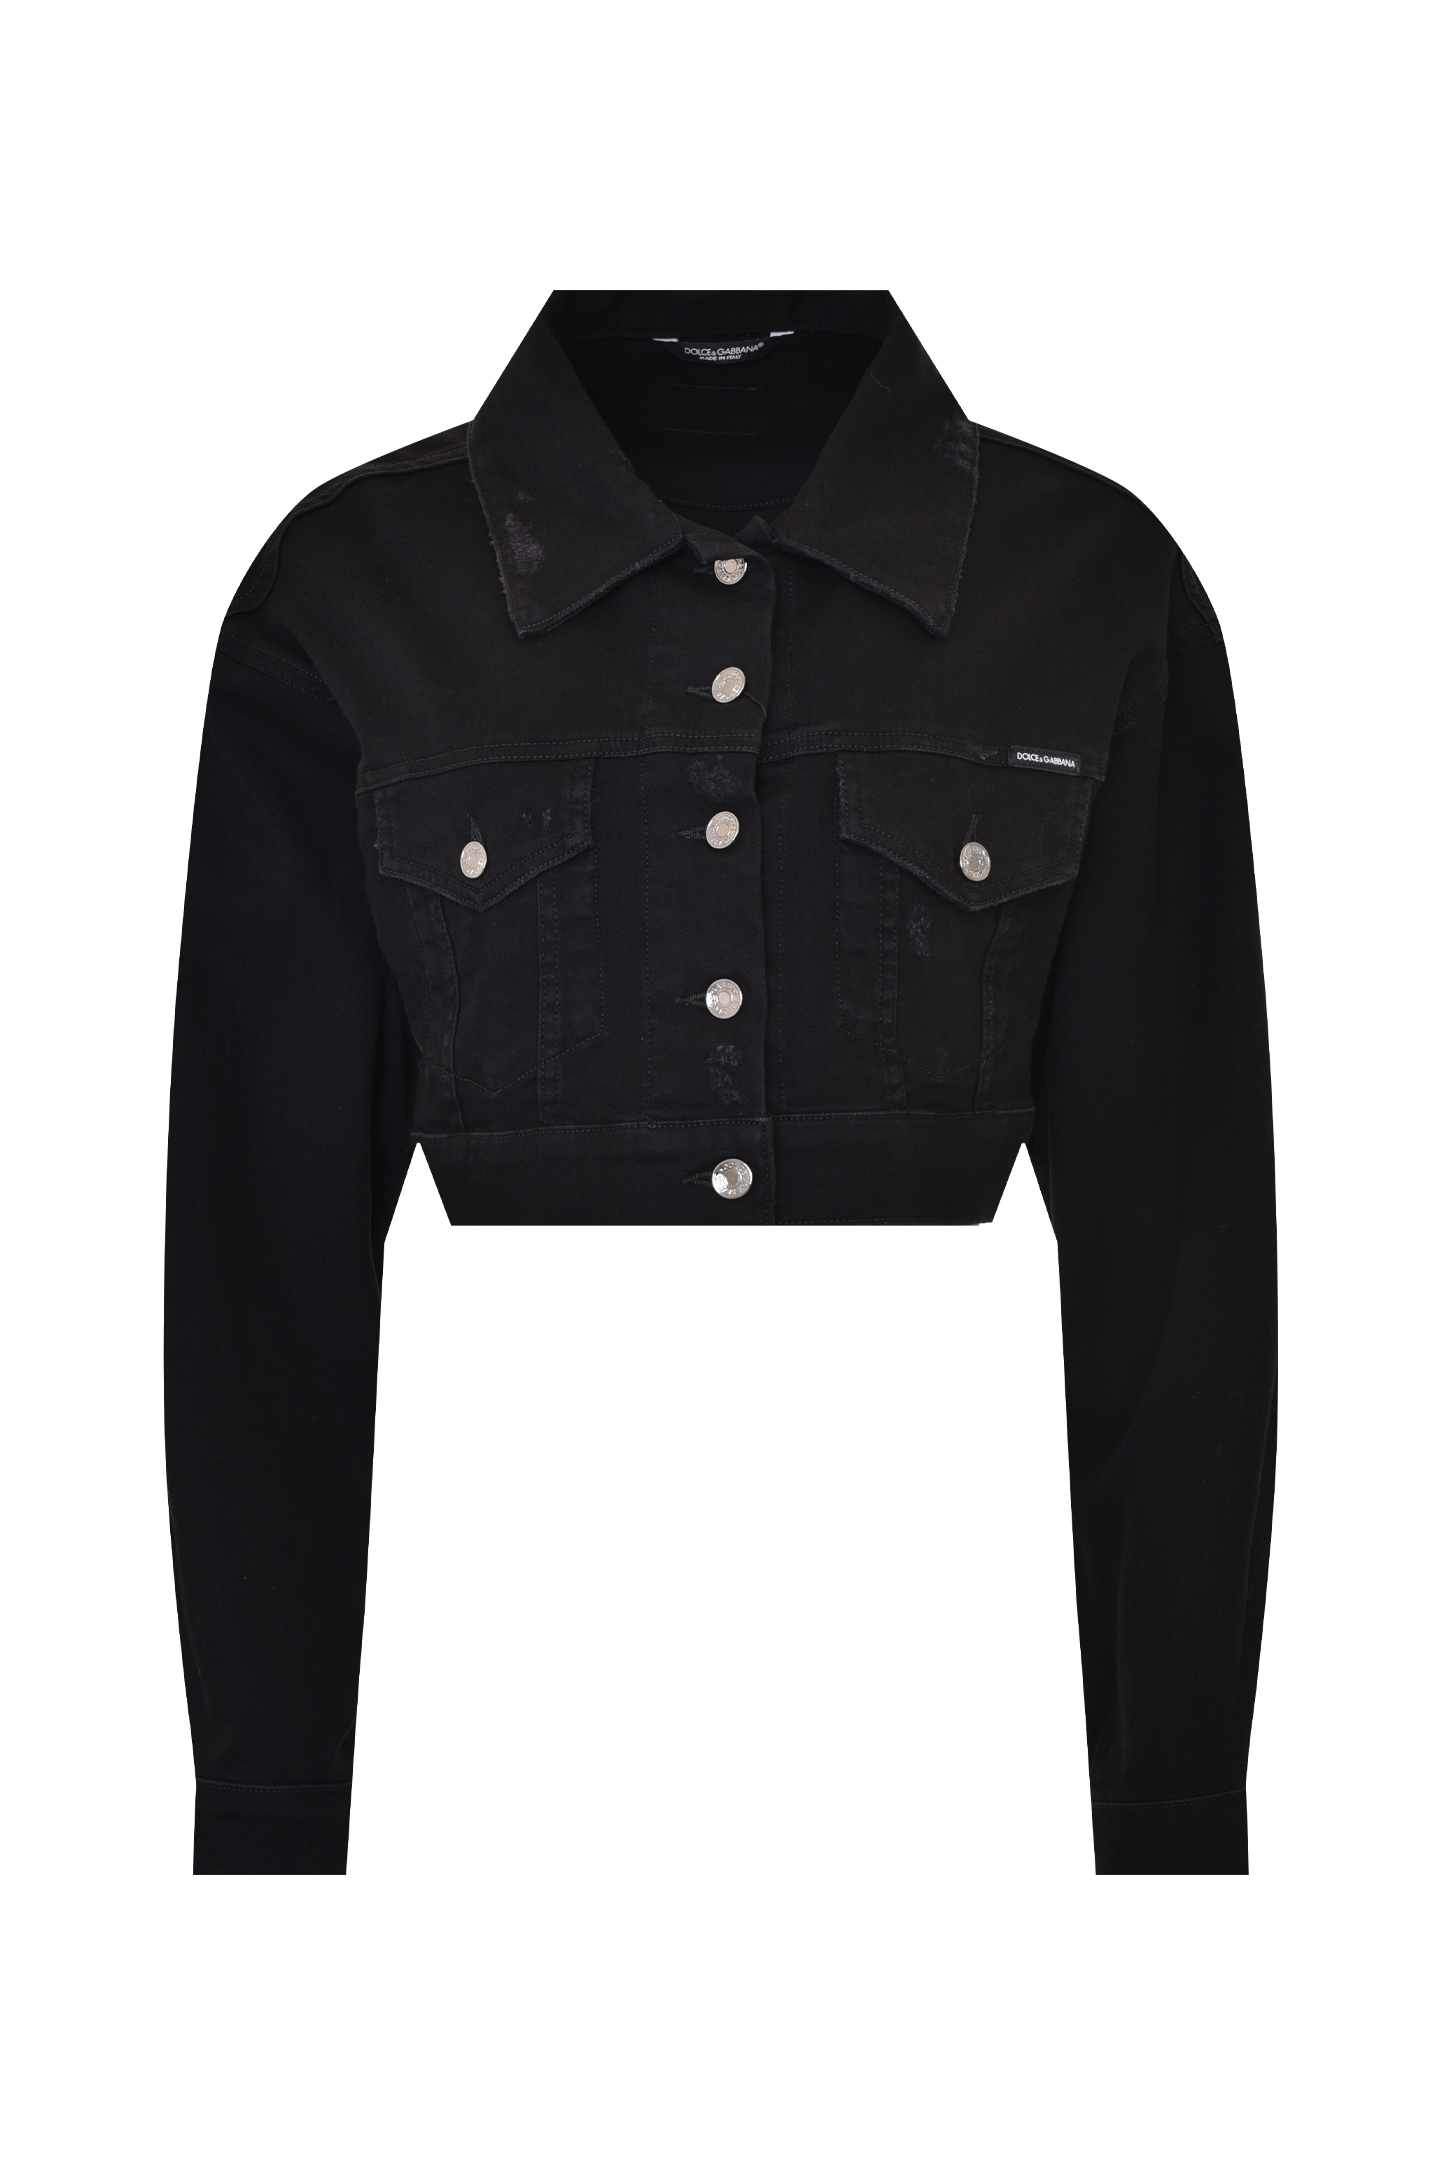 Куртка DOLCE & GABBANA F9M02D G8DK9, цвет: Черный, Женский